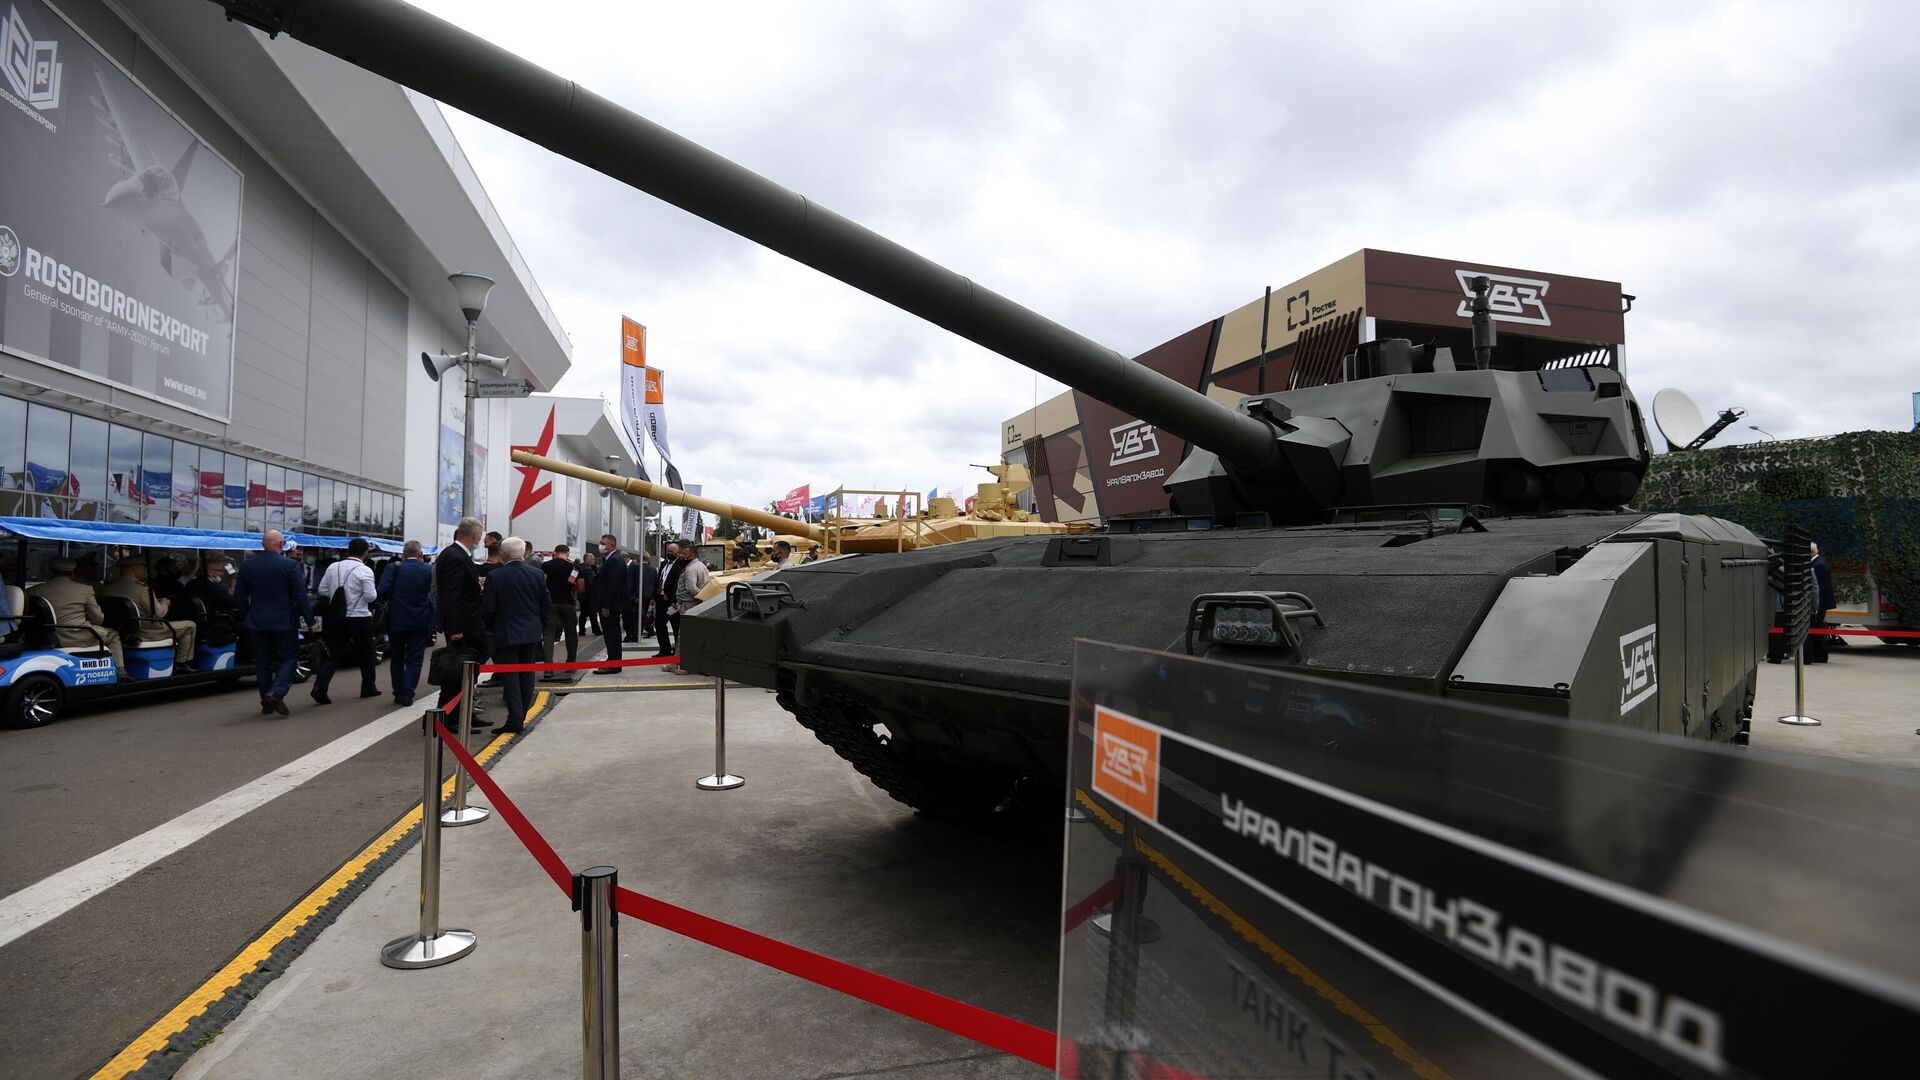 Танк Т-14 Армата на выставке вооружений Международного военно-технического форума Армия-2020 - РИА Новости, 1920, 02.11.2020